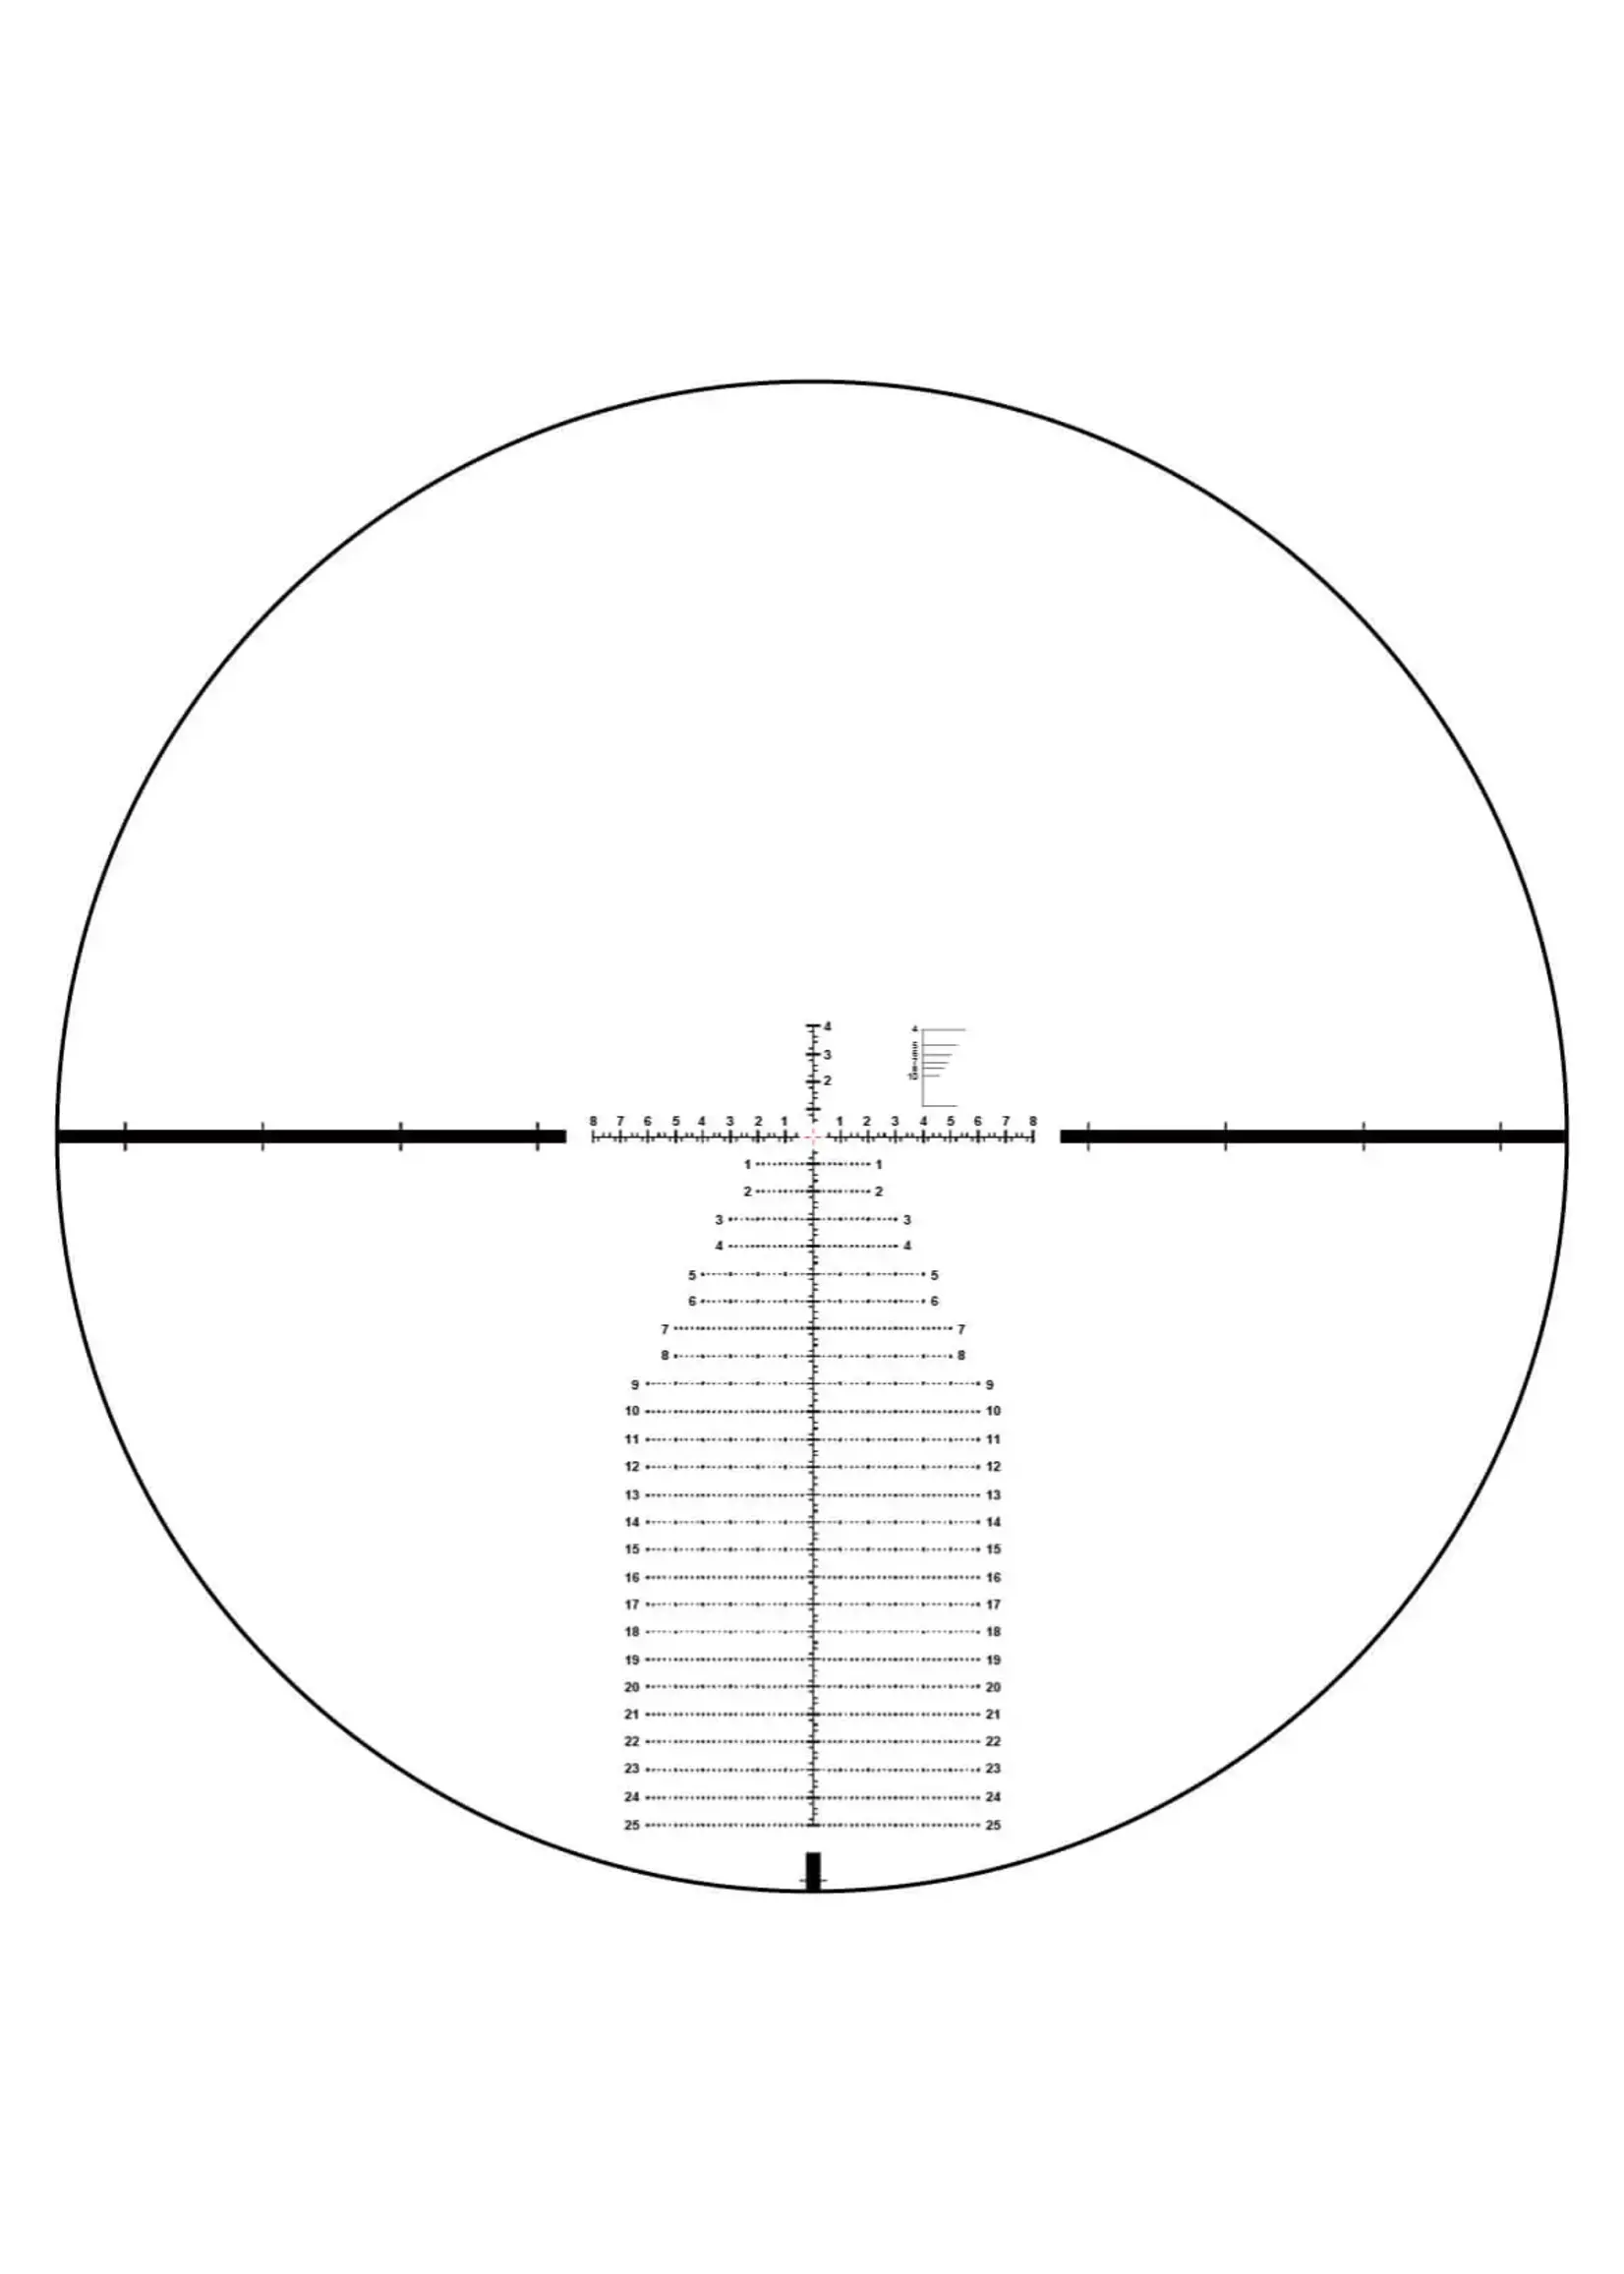 Vector Optics Vector Optics Continental Tactical 4-24x56 FFP Riflescope FDE Ranging